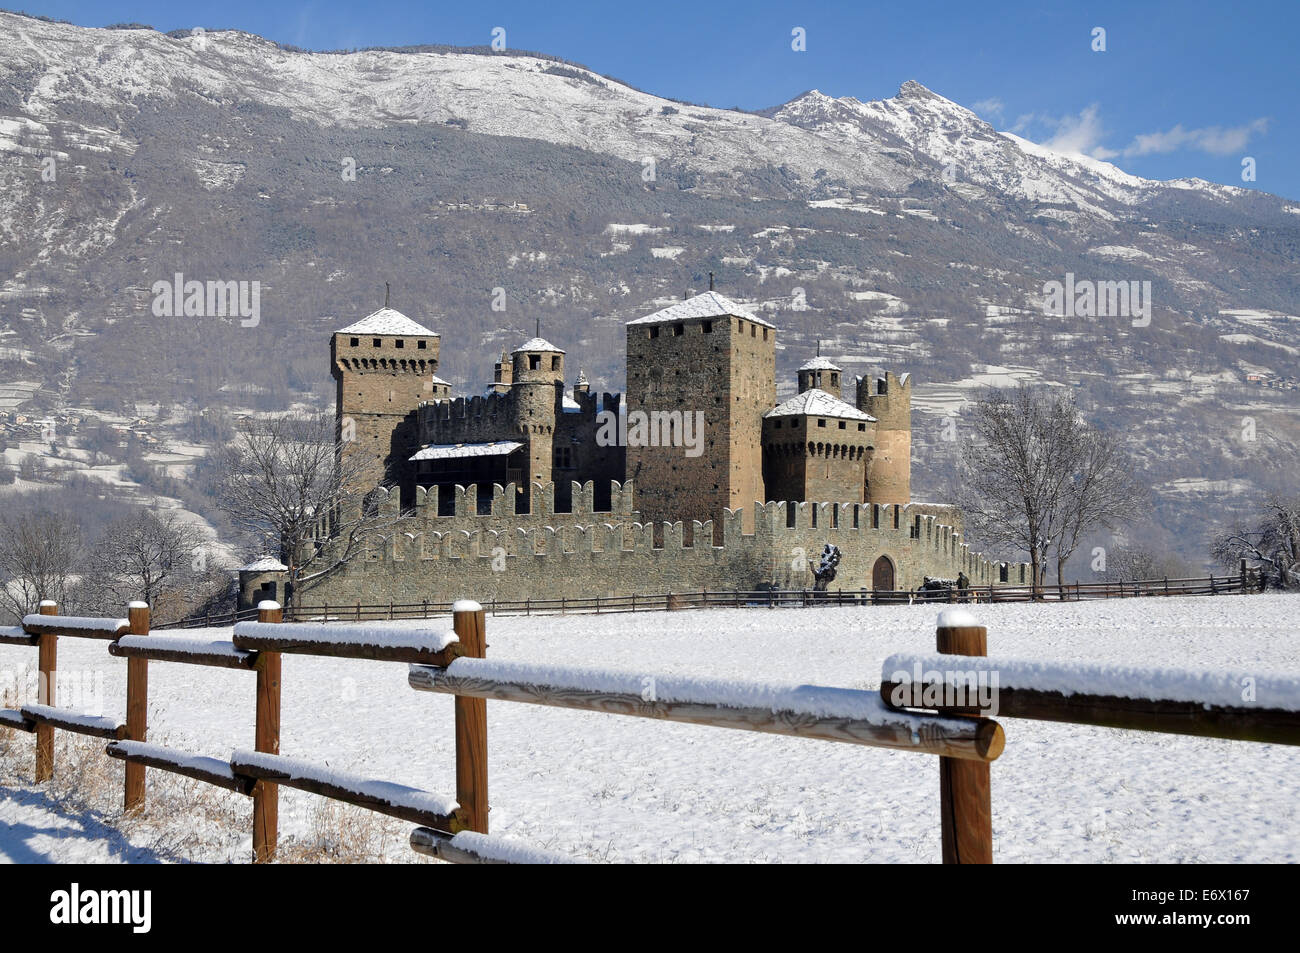 Le château de Fenis, vallée d'aoste, Italie Banque D'Images